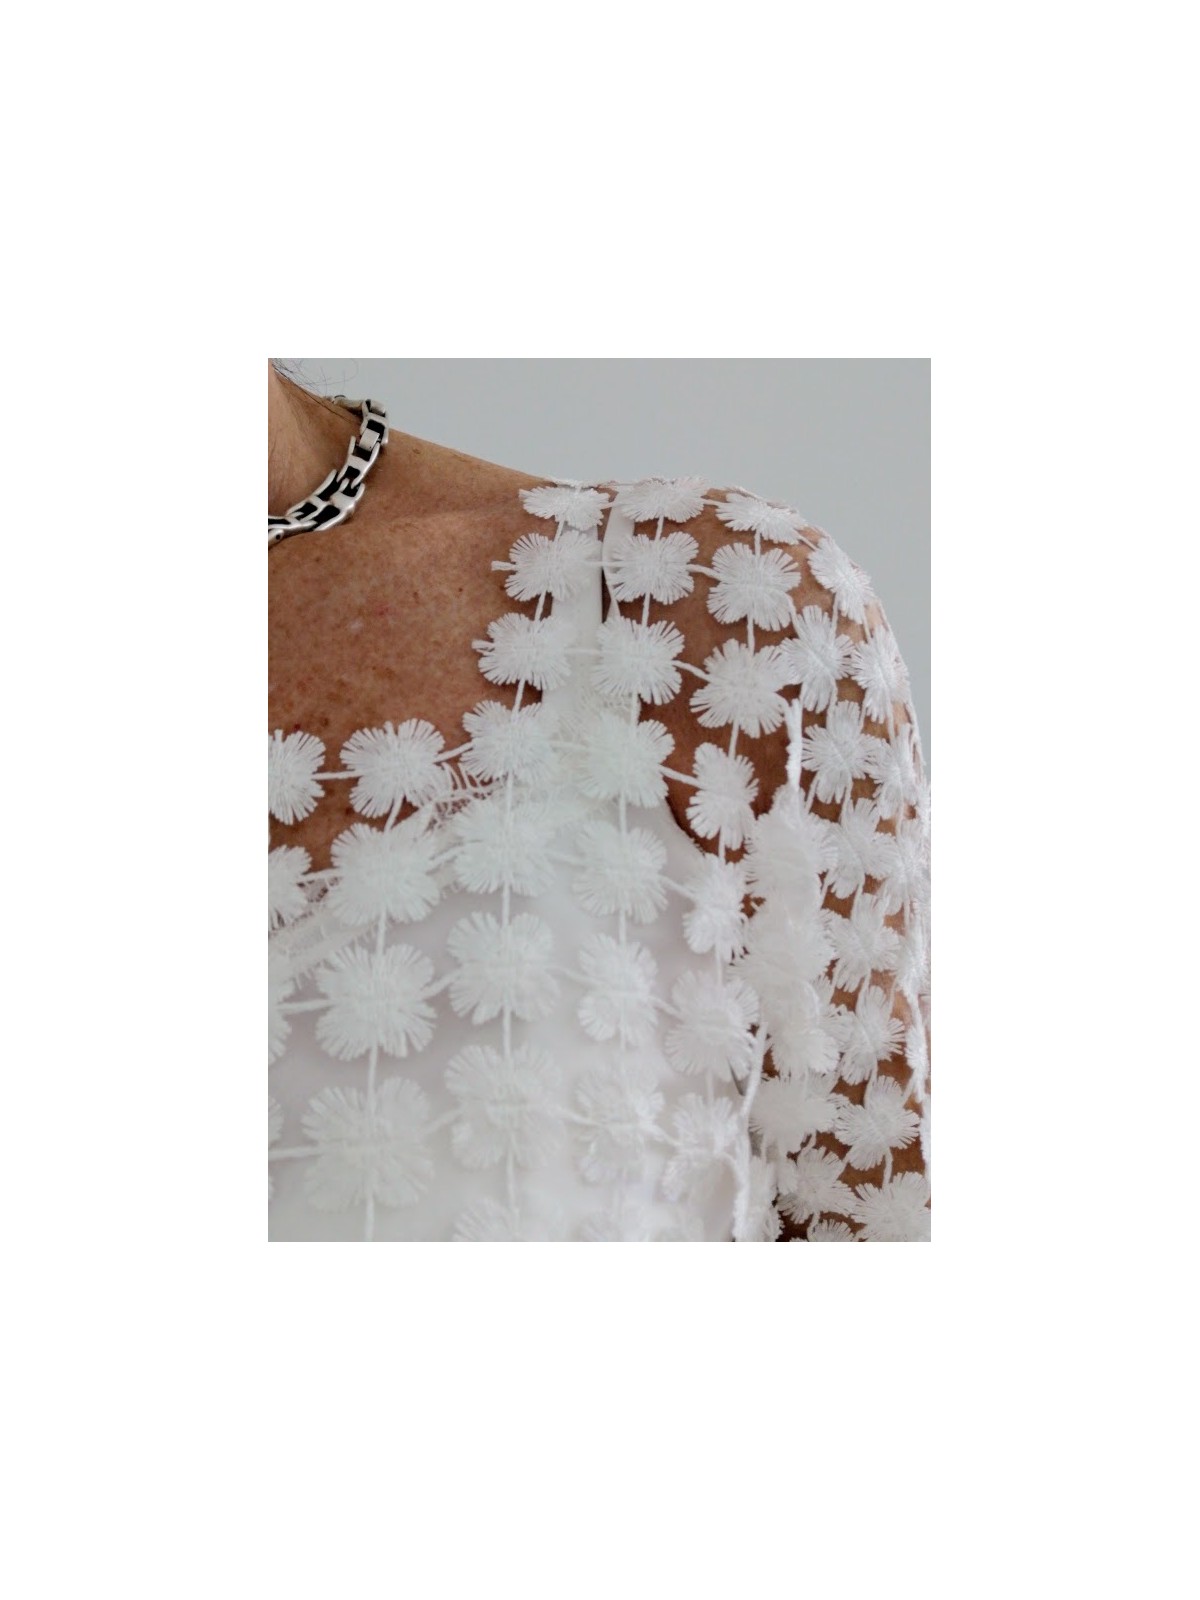 Haut style romantique blanc à fleurs l 5 vue rapprochée l Tilleulmenthe mode boutique de vêtements femme en ligne